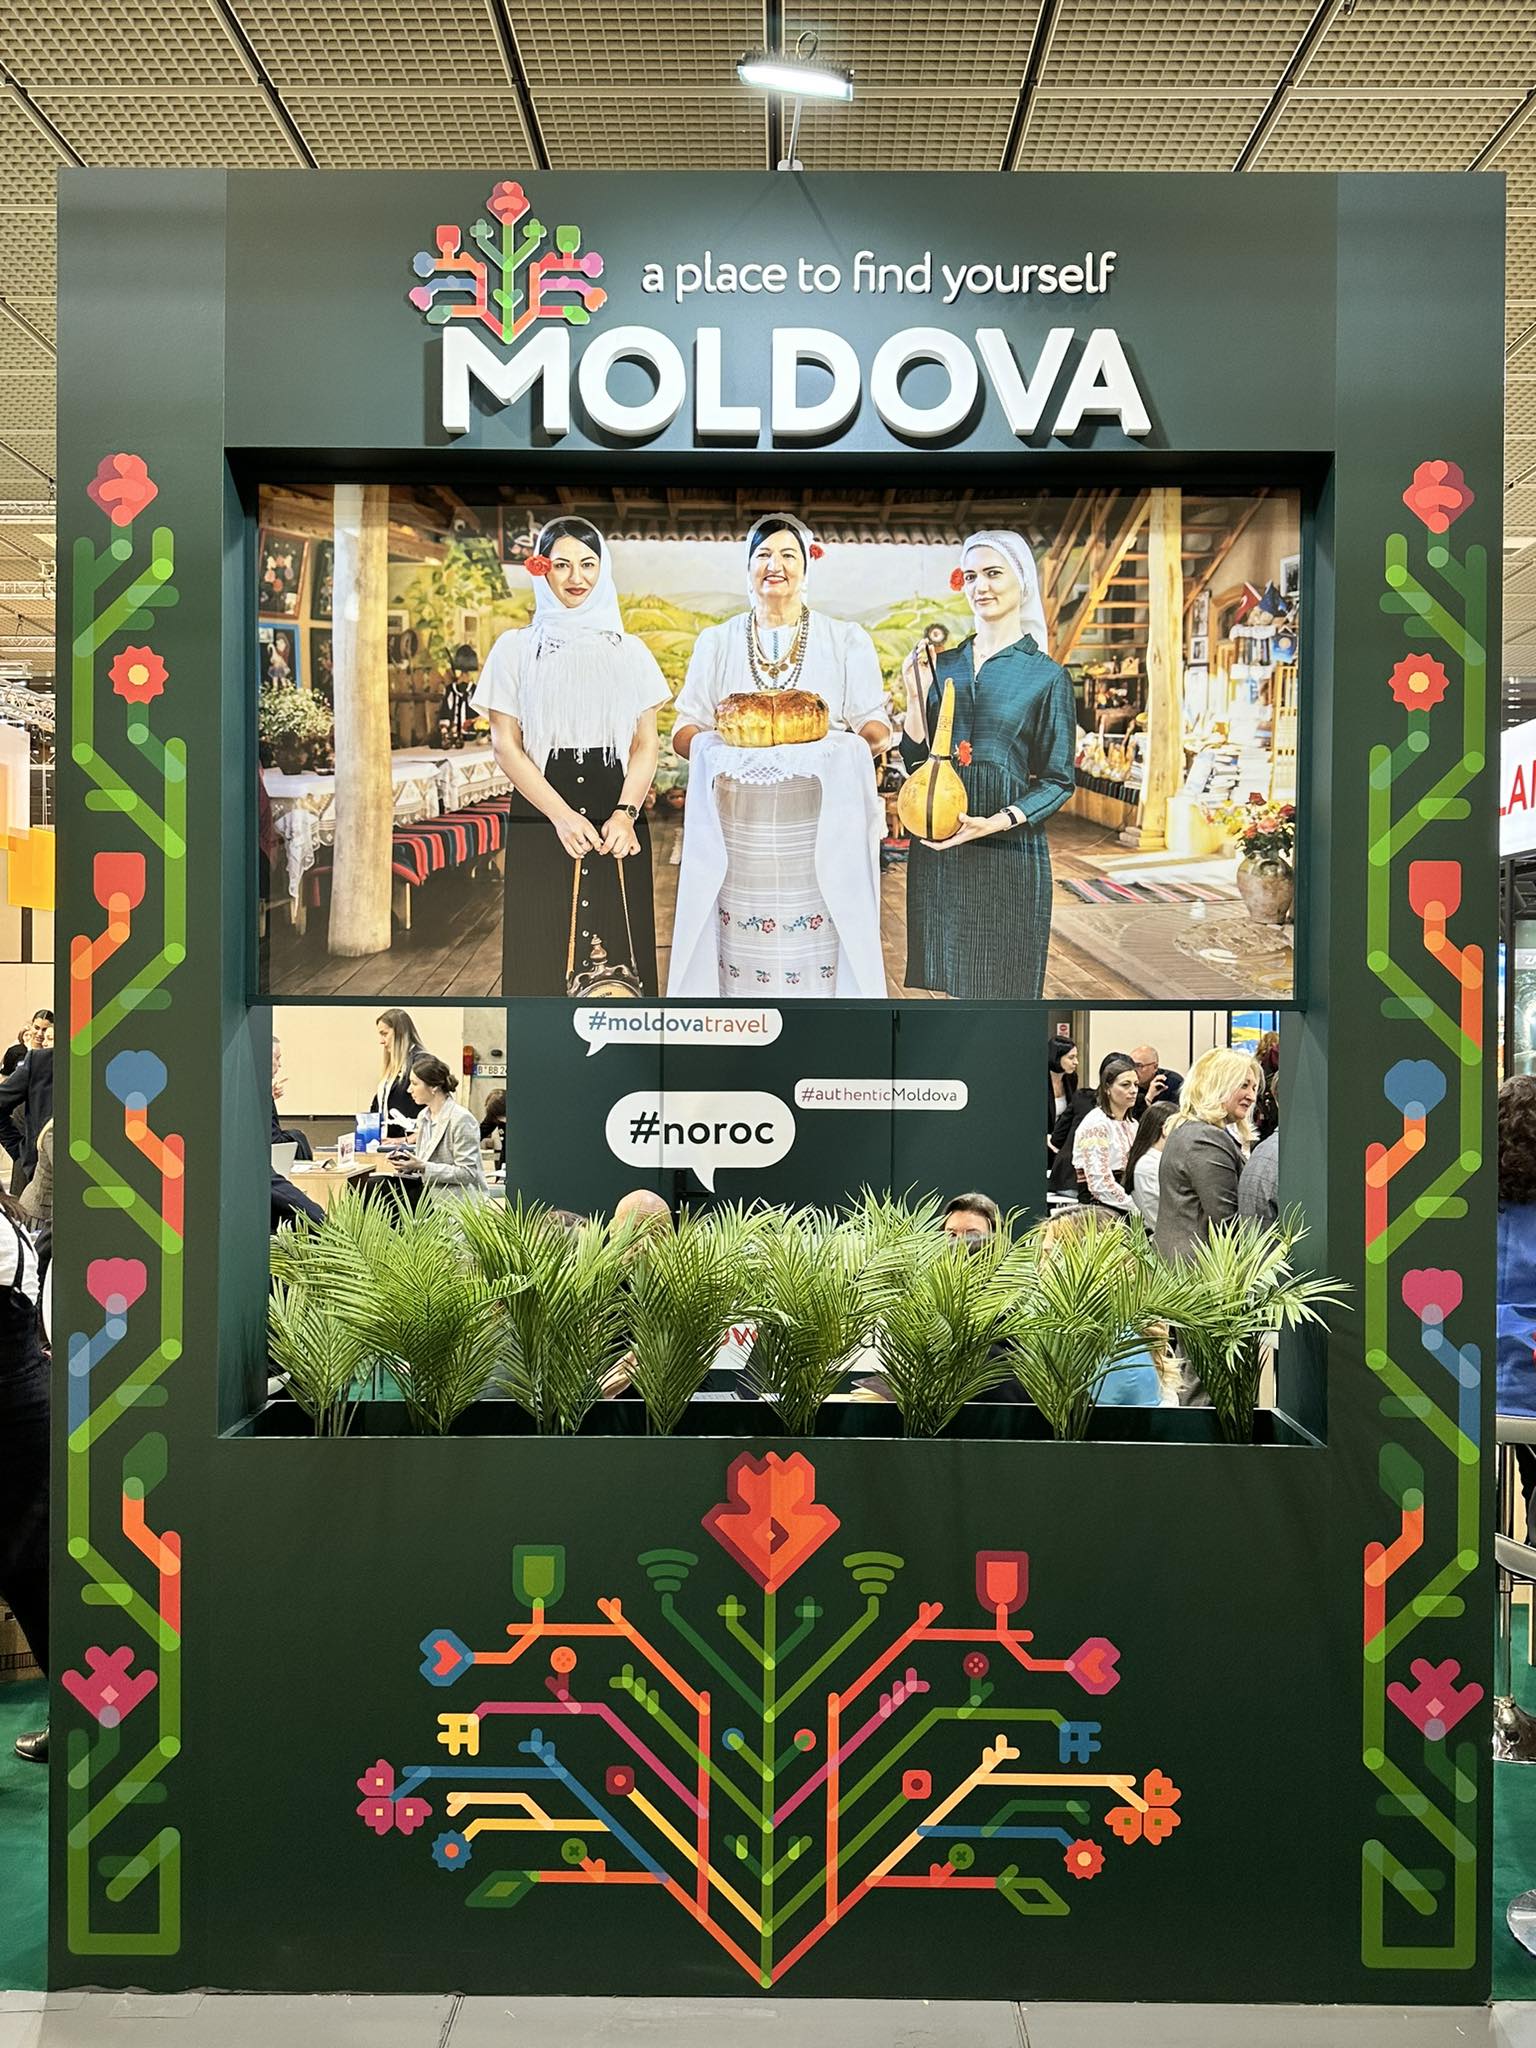 (ФОТО) Молдова участвует в международной туристической ярмарке в Берлине